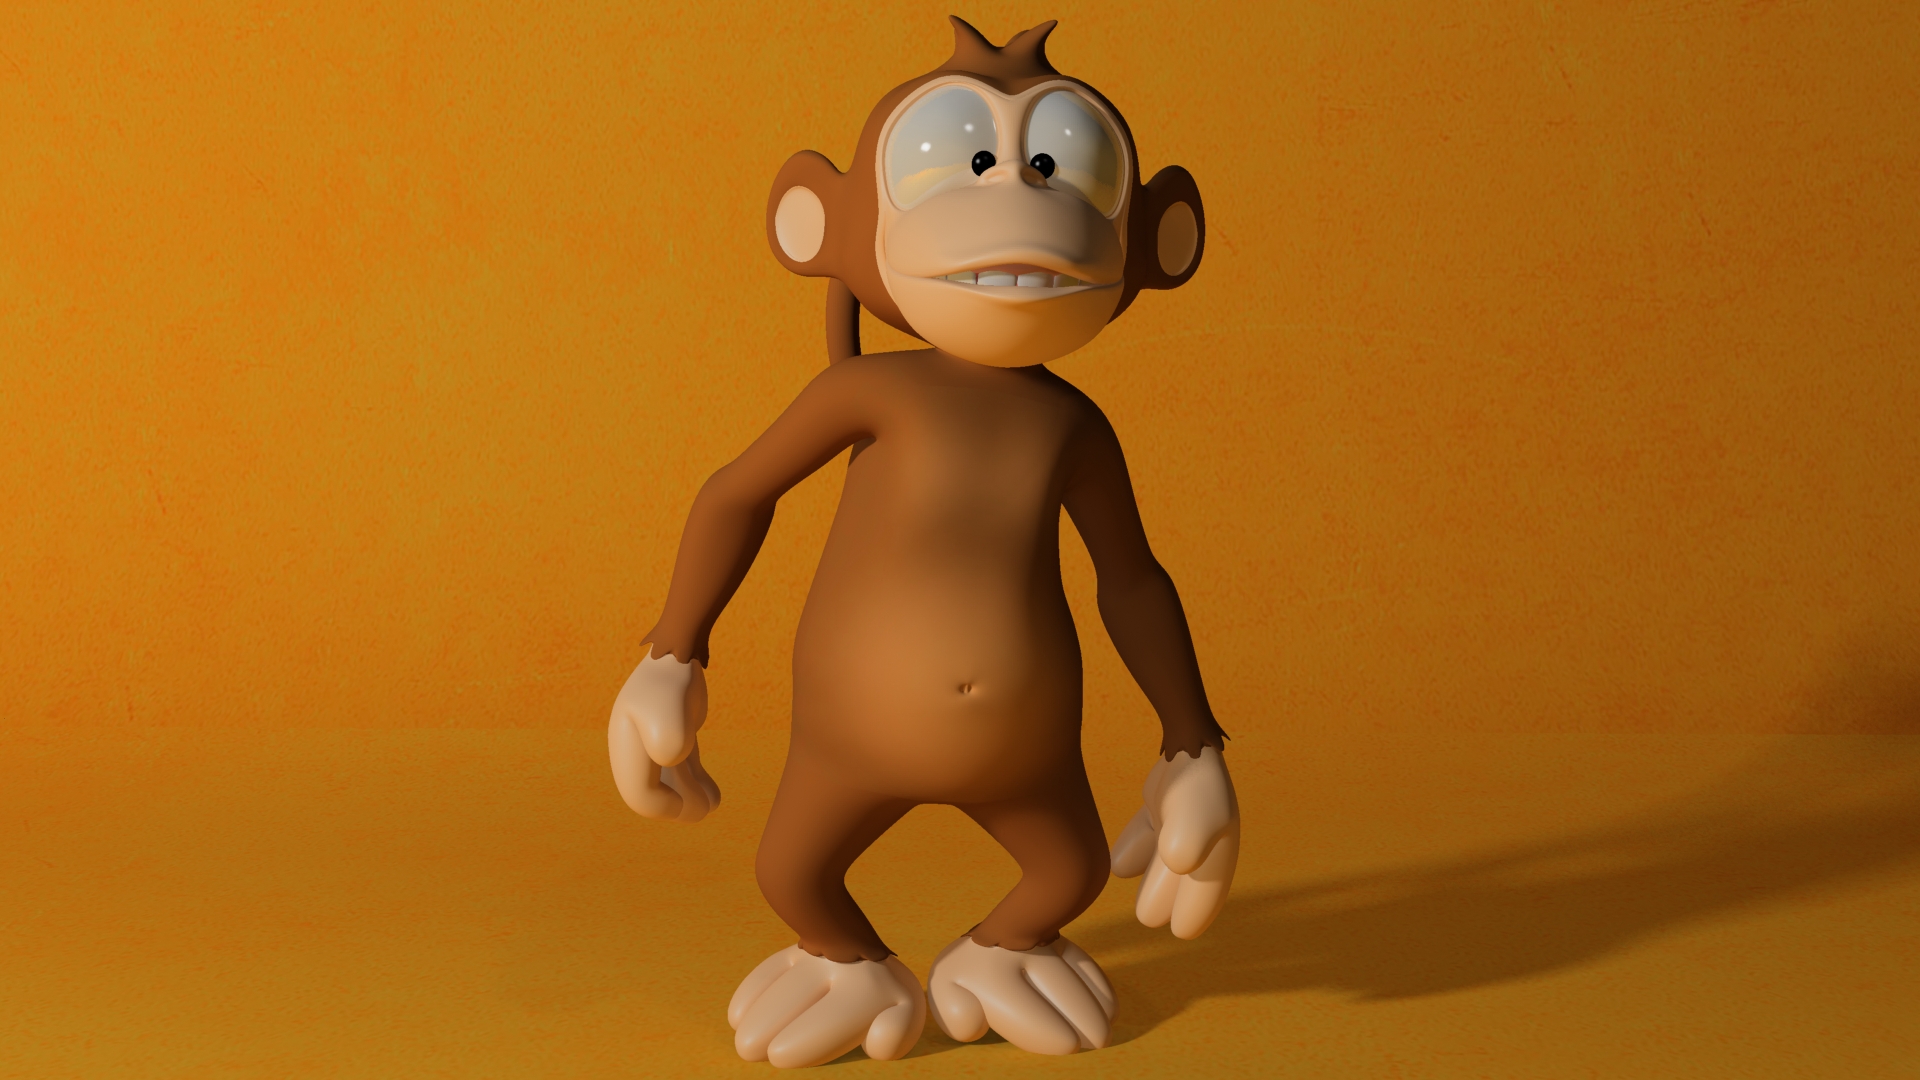 3d Cartoon Monkey 1920x1080